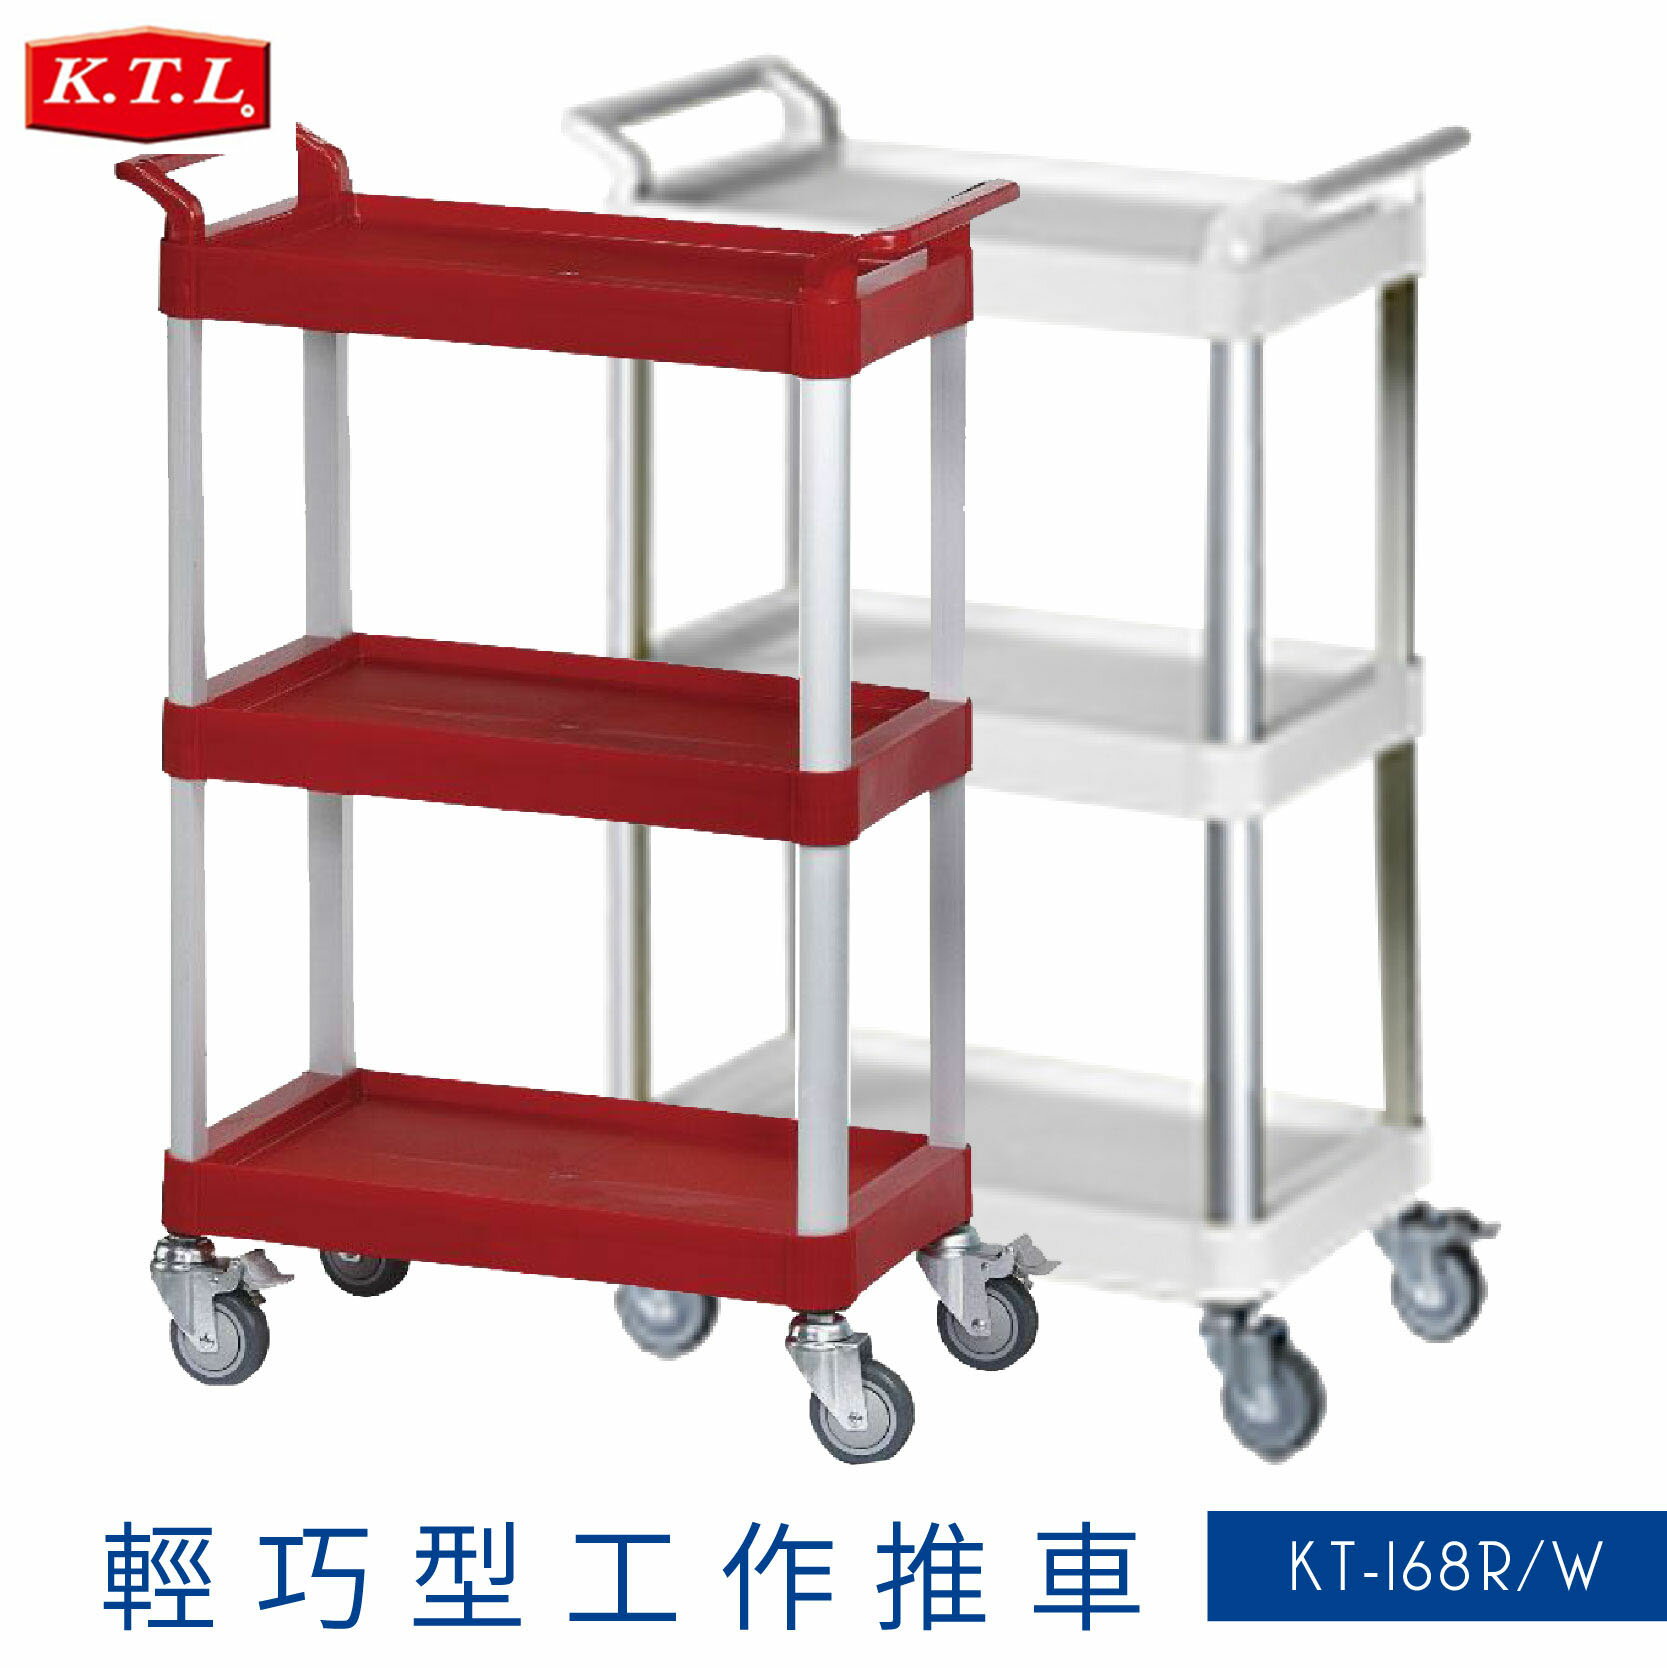 【限時促銷】KT-168 紅-白 輕巧型工作推車 三層 全配式雙把手 手推車 置物車 分層車 置物架 分層架 餐飲 工業